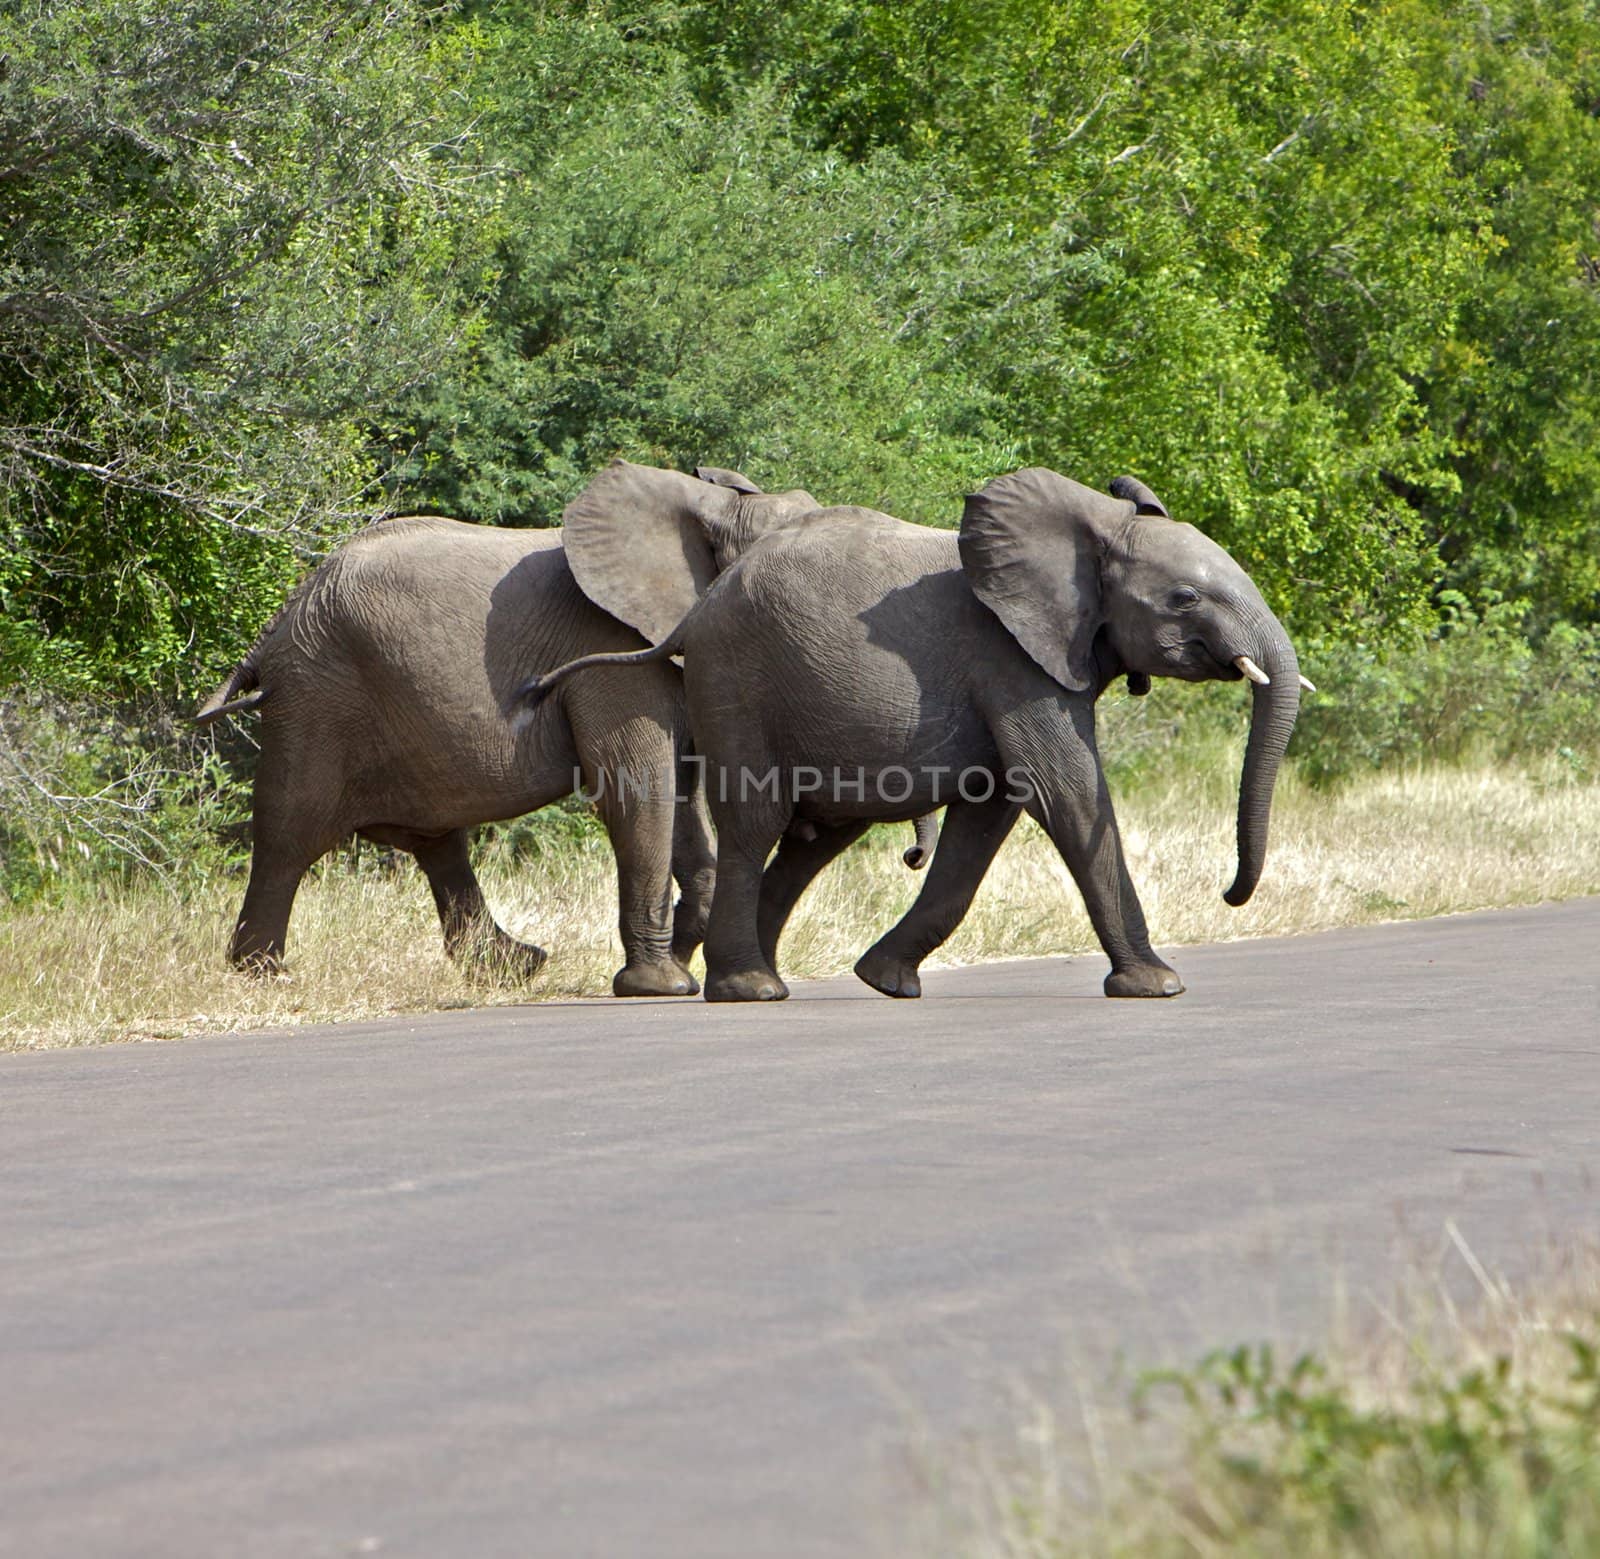 Elephants by instinia